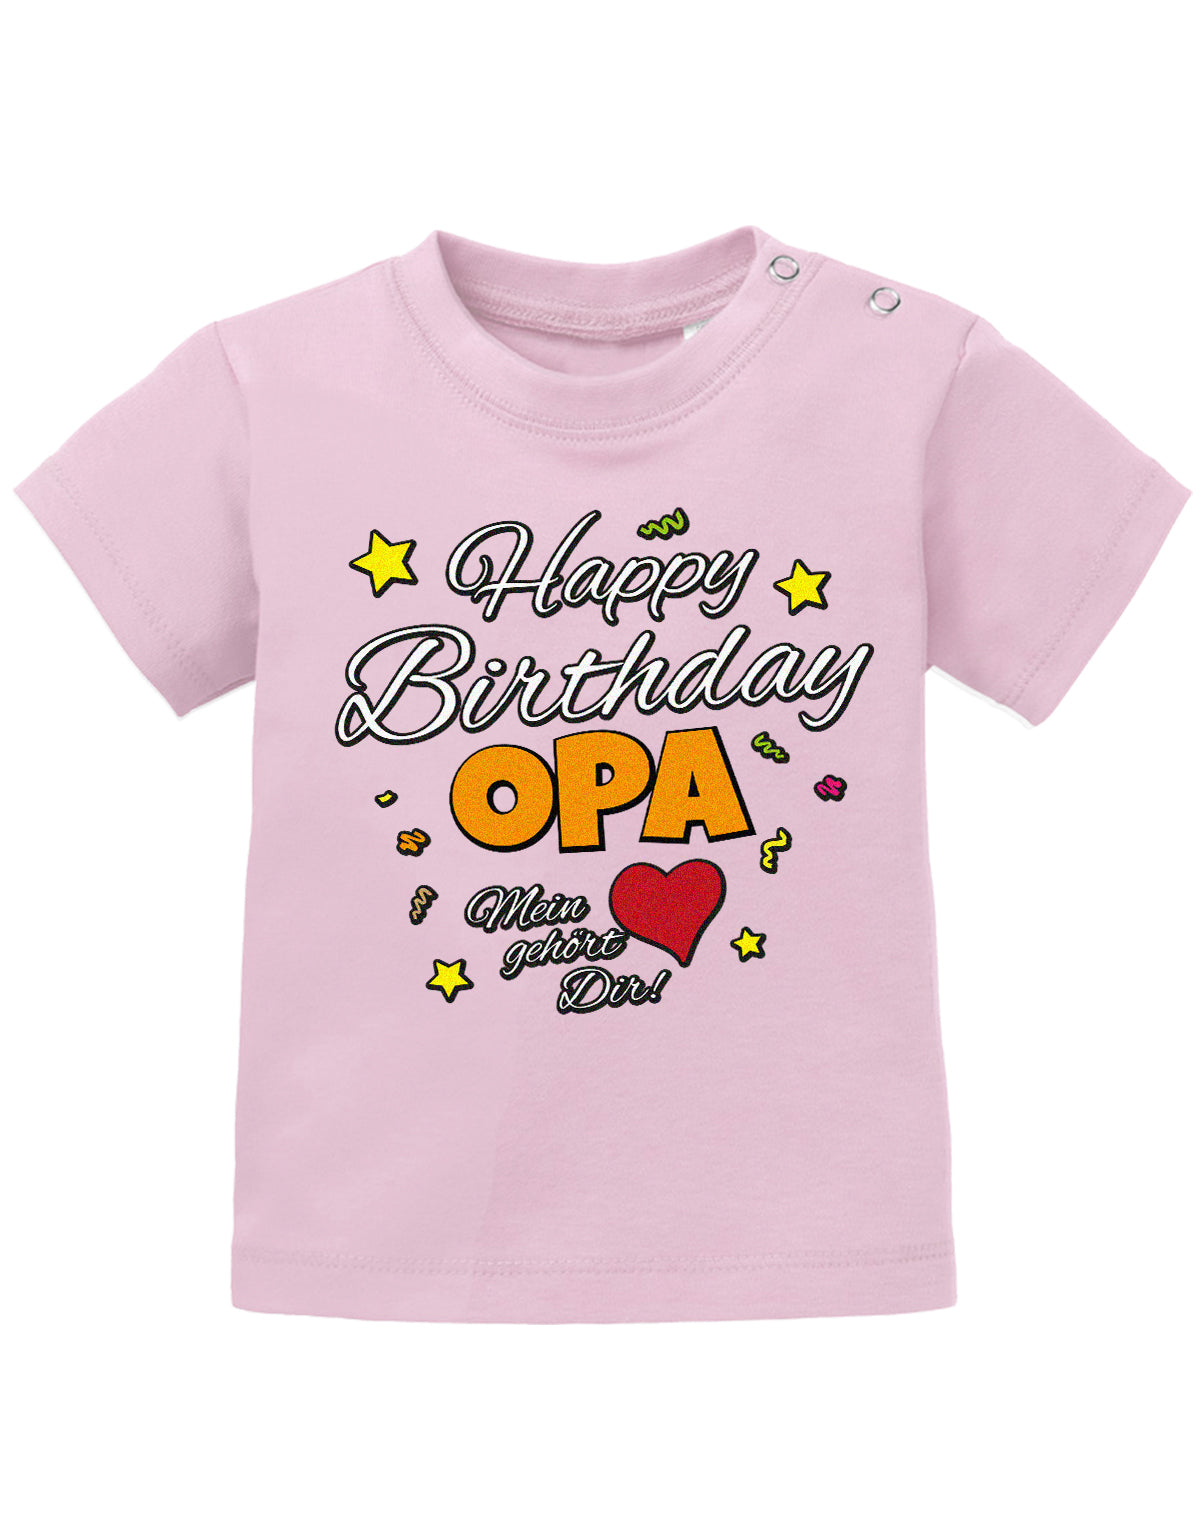 Opa Spruch Baby Shirt. Happy Birthday, Opa, mein Herz gehört Dir. Rosa